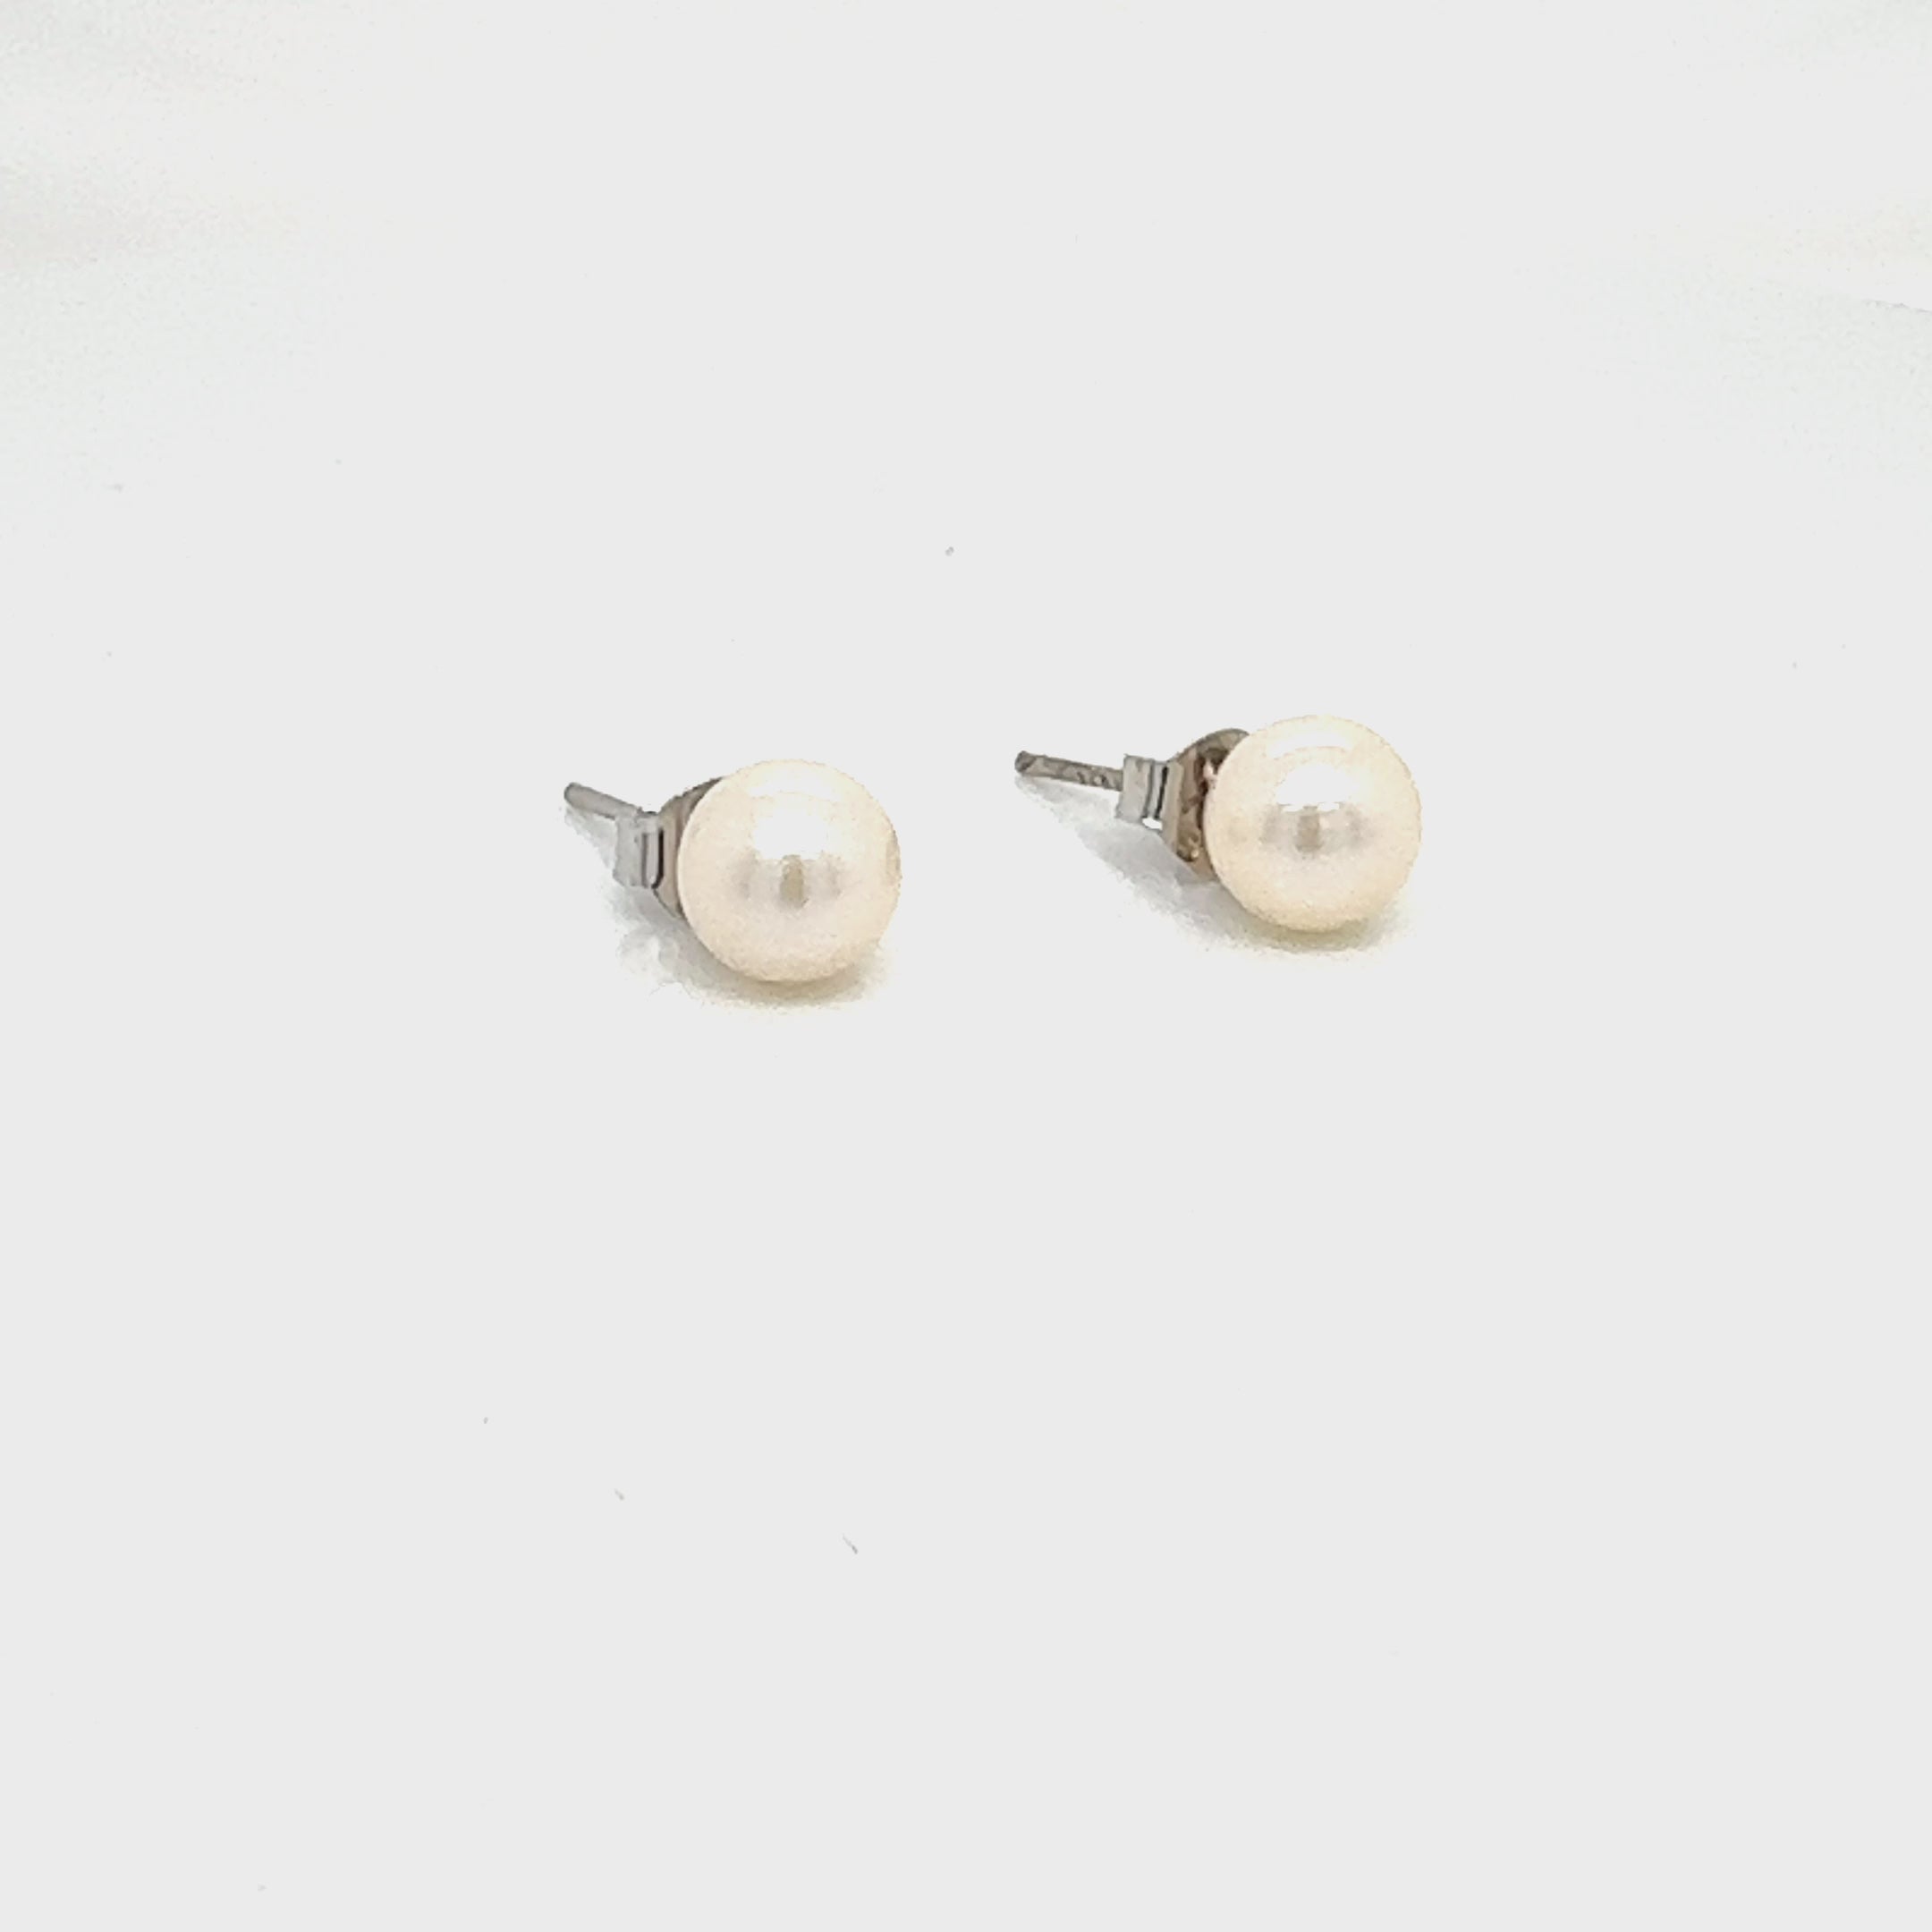 Pearl earrings on silver backs